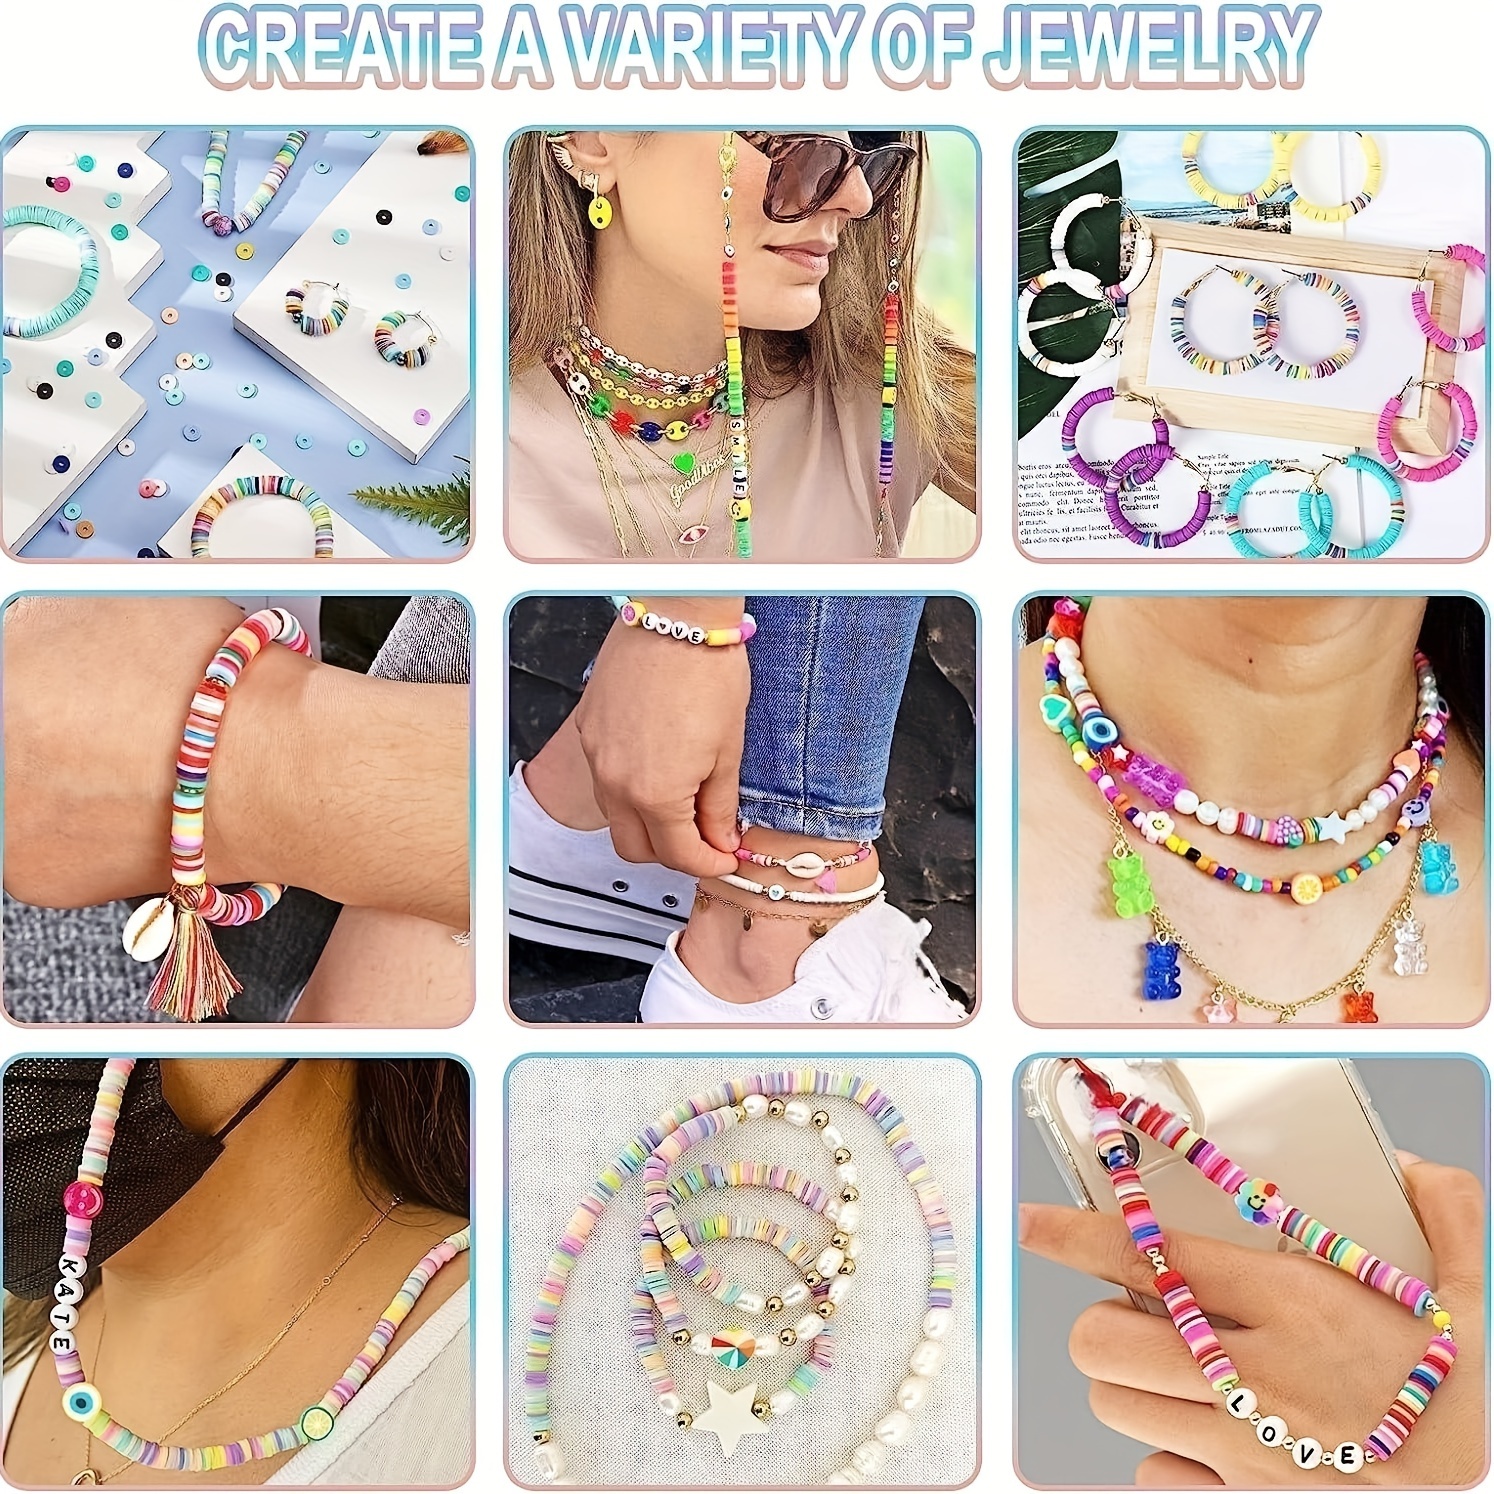 Lynnmos Kit de fabrication de bracelets 4800 pièces – 20 couleurs de perles  en argile polymère pour la fabrication de bracelets – Kit de fabrication